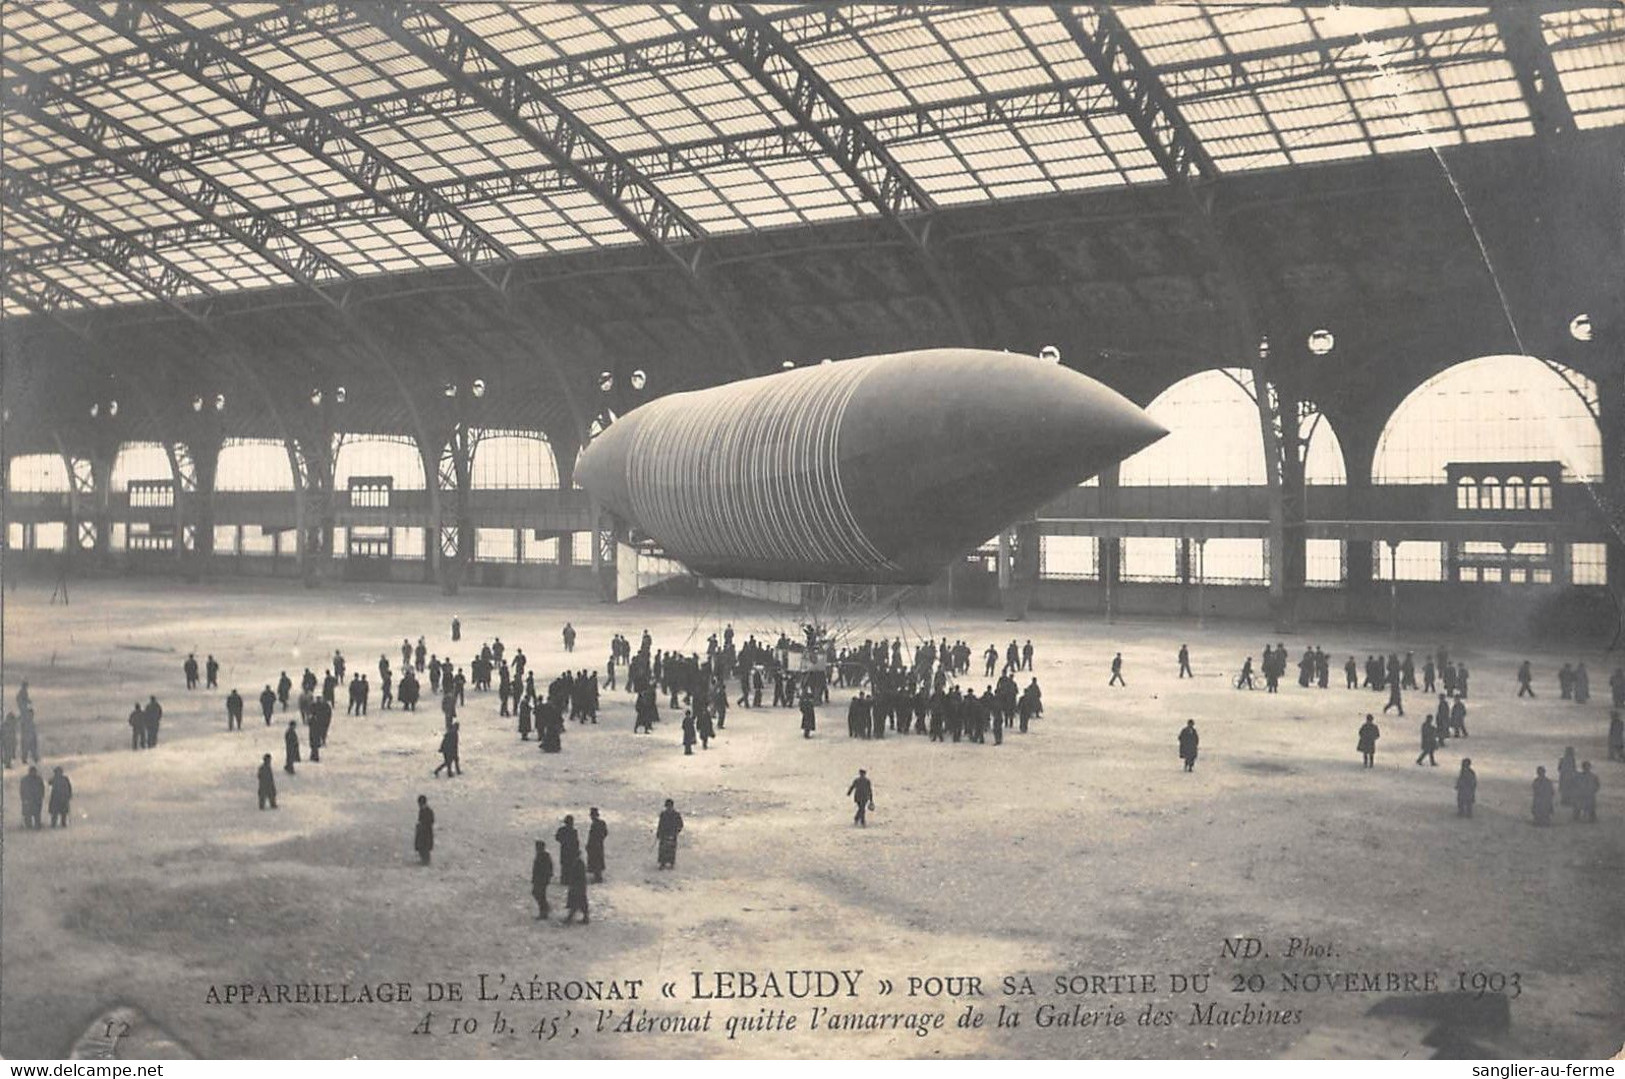 CPA AVIATION / APPAREILLAGE DE L'AERONAT / LEBAUDY / 1903 / BALLON DIRIGEABLE - Airships